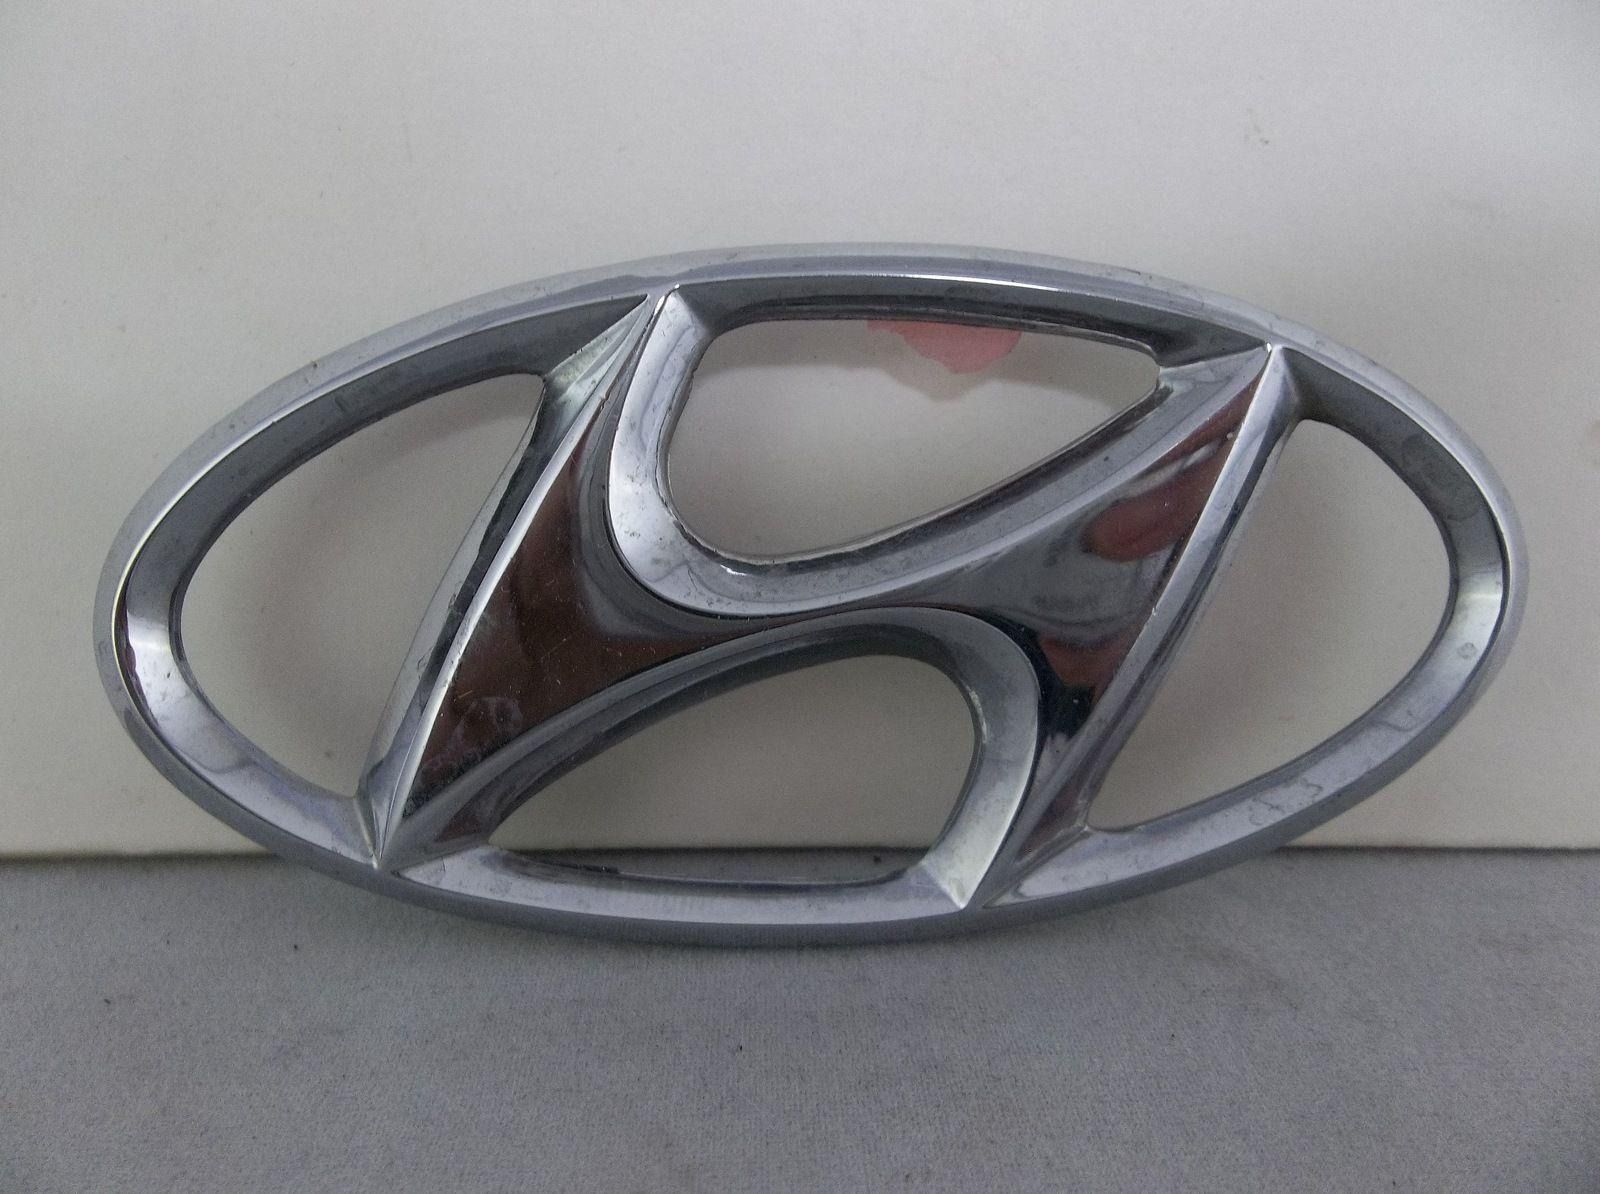 Car Trunk Logo - Chrome Plastic Hyundai Trunk Logo Emblem OEM #Hyundai #Chrome ...